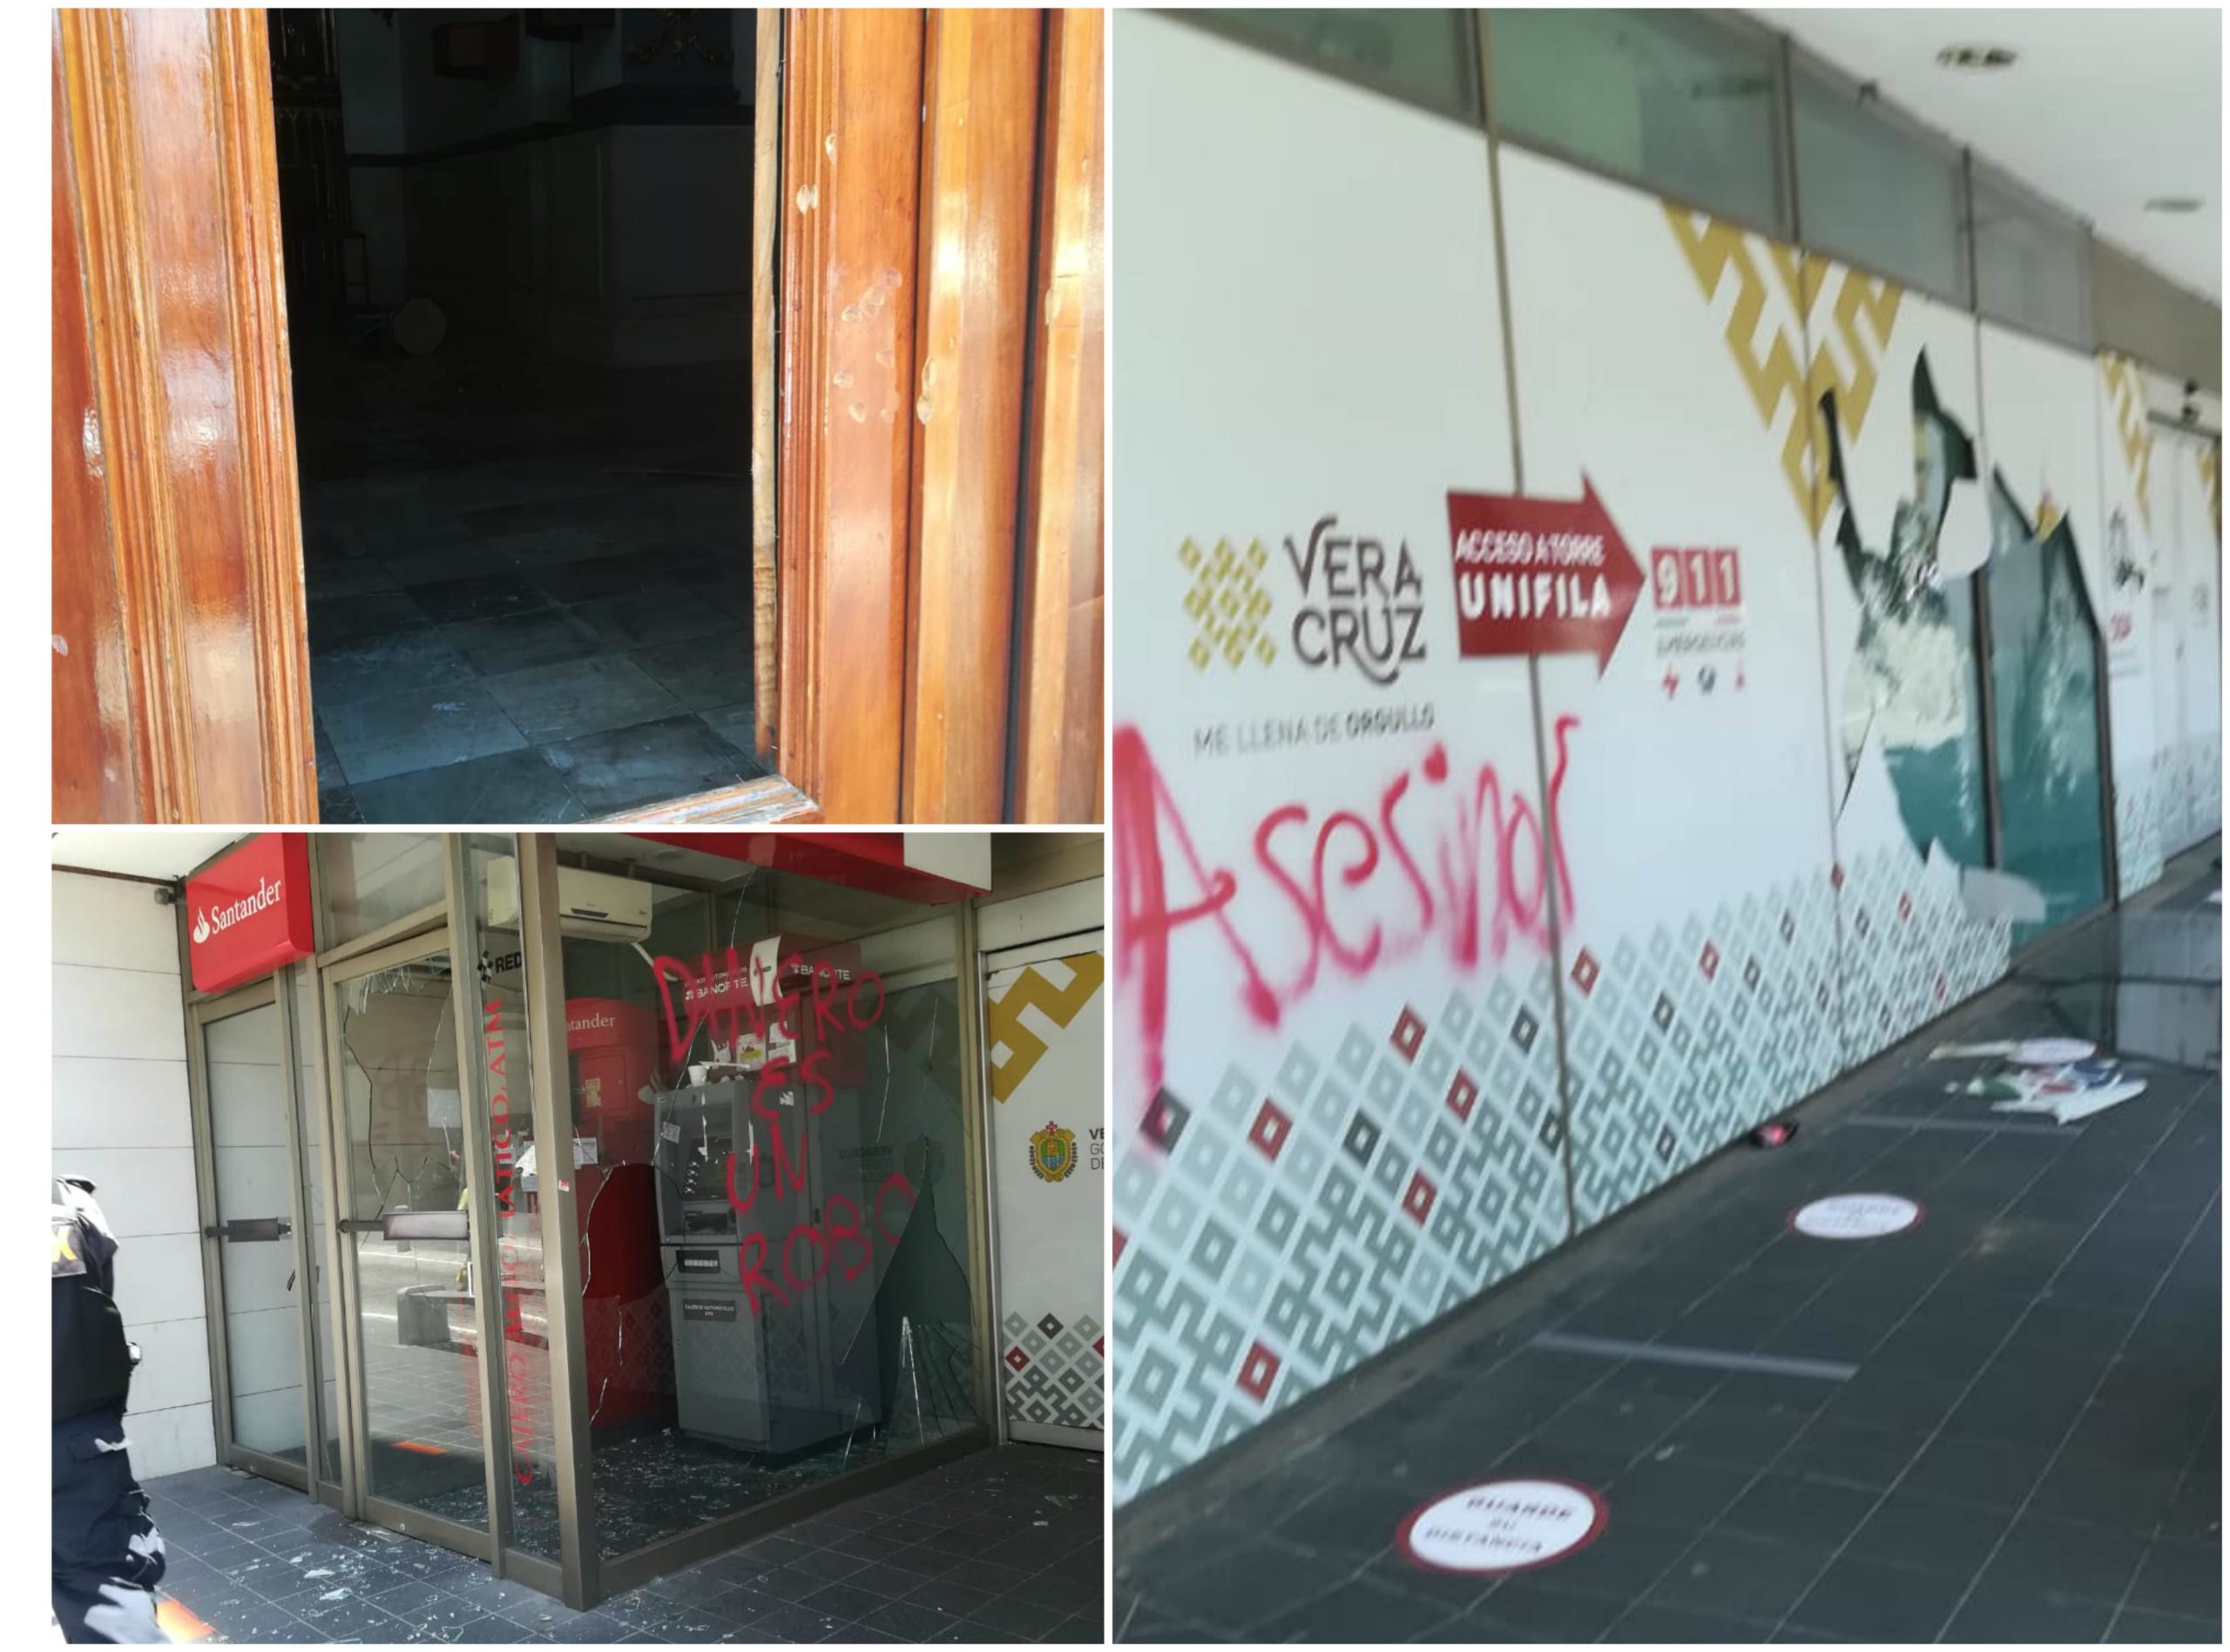 Encapuchados provocan actos vandálicos en el centro de Xalapa